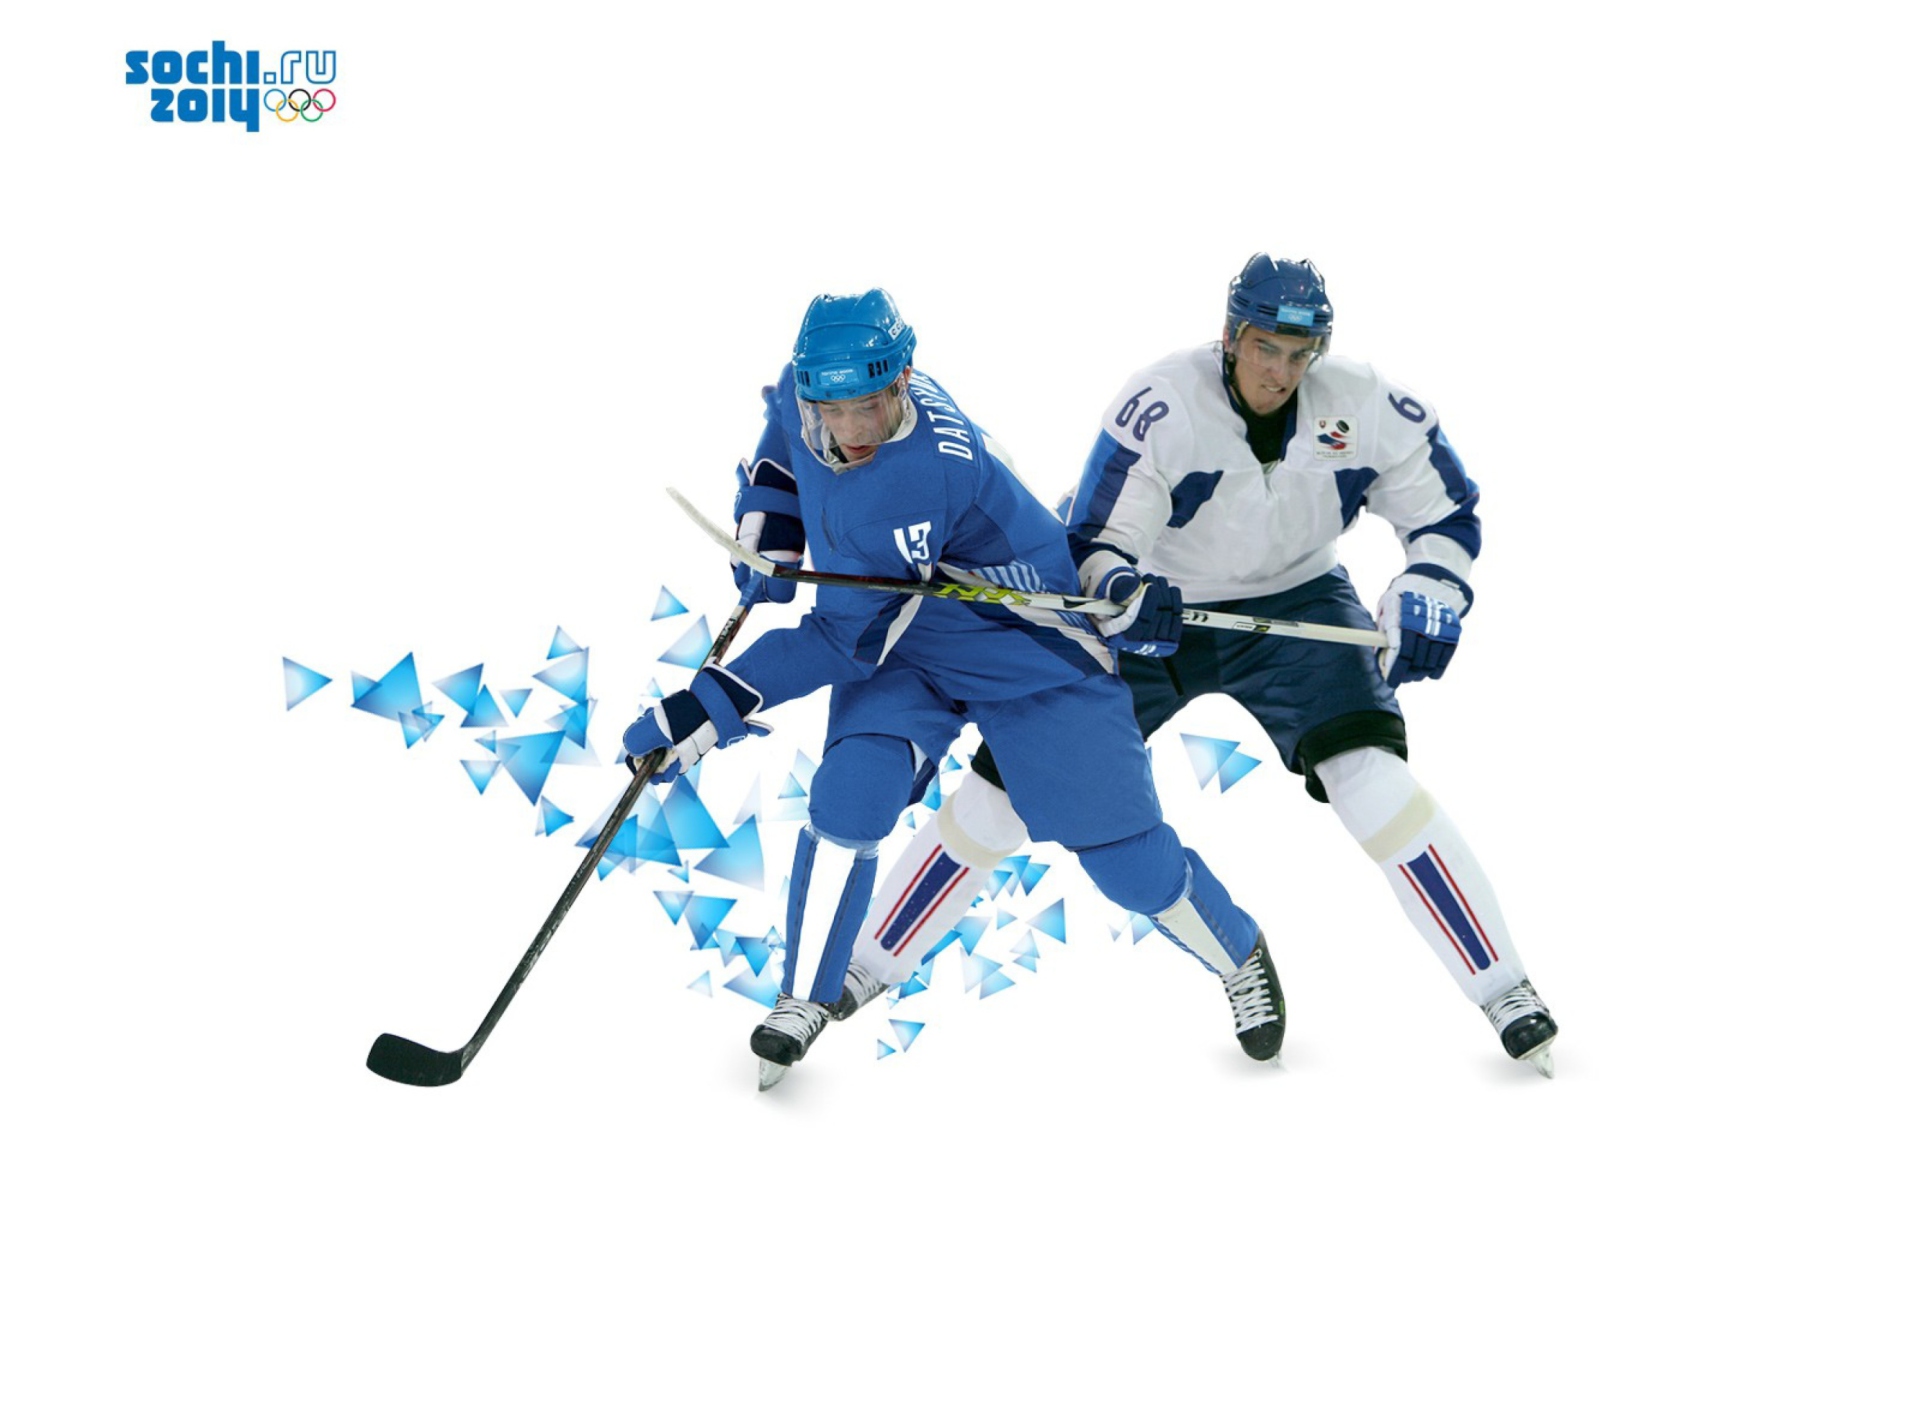 Sochi 2014 Hockey wallpaper 1920x1408